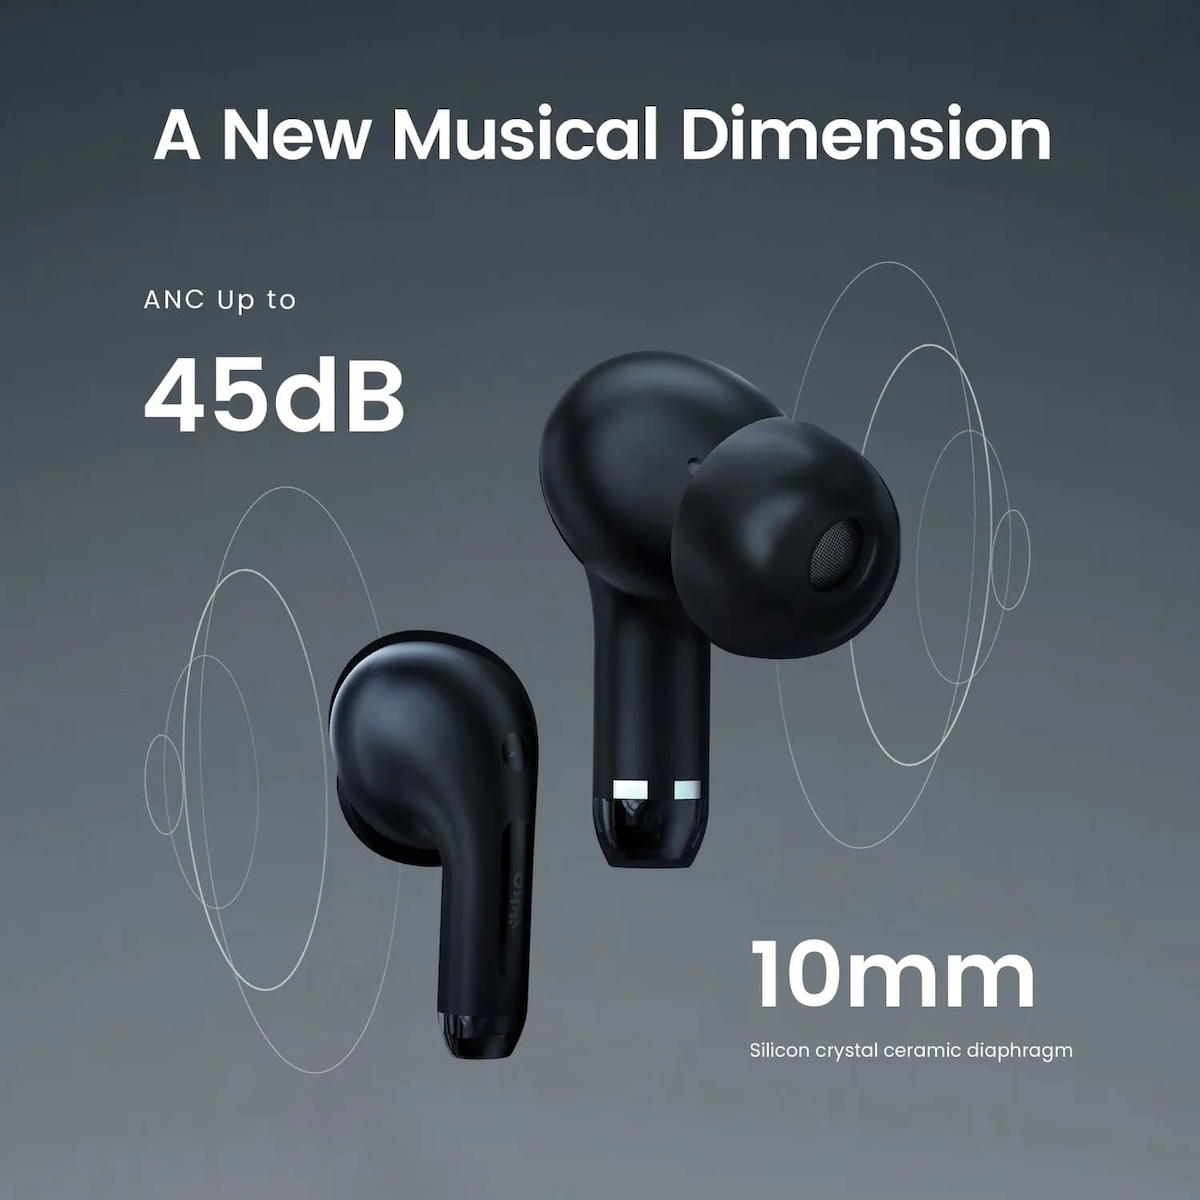 wireless headphones multifunctional translation pakikinig sa musika